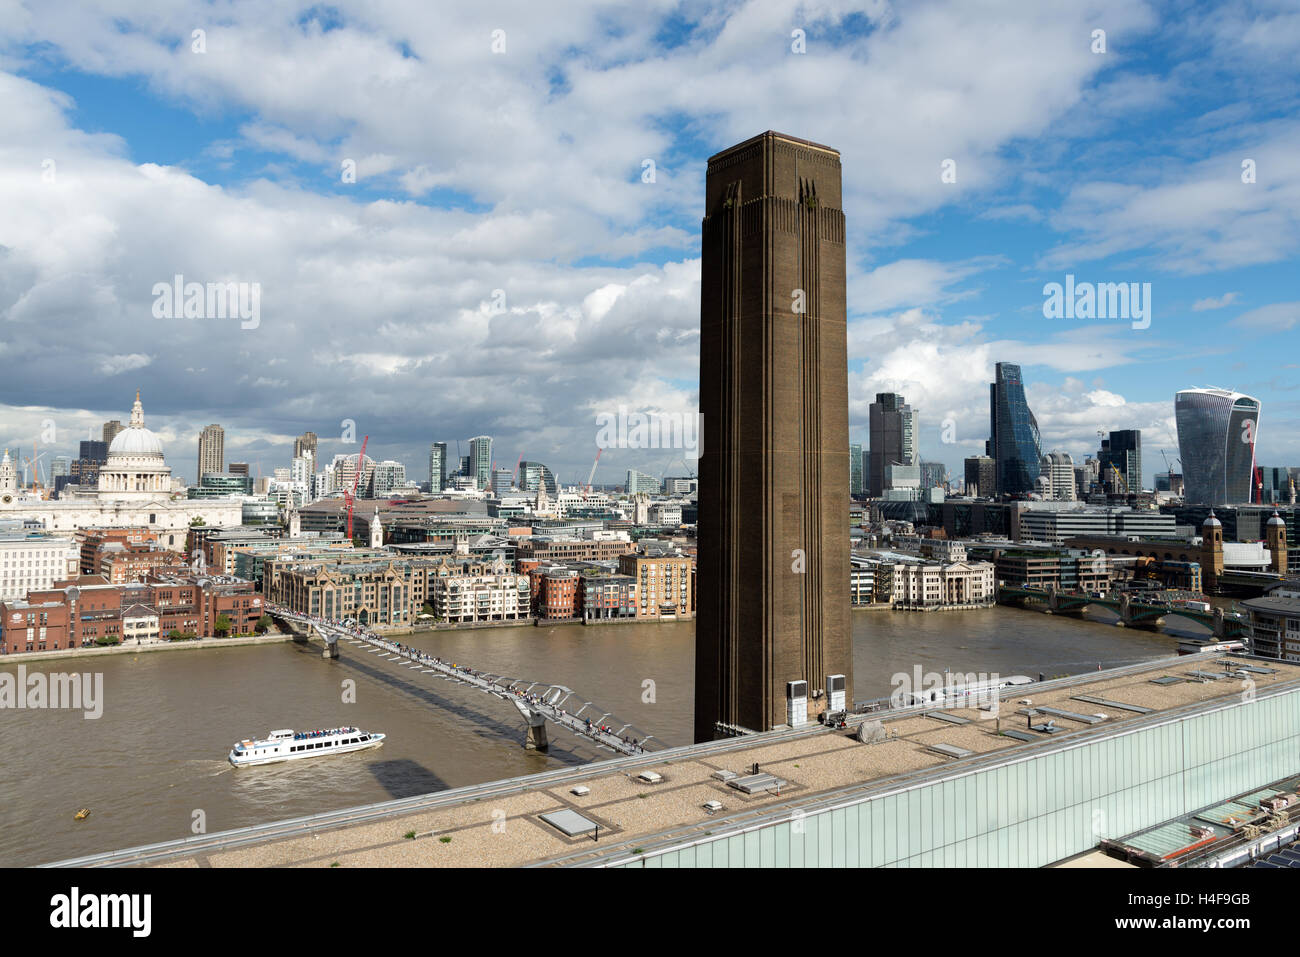 Blick auf die Themse und der City of London von der Aussichtsplattform des Tate Modern Schalter Haus, England, UK Stockfoto